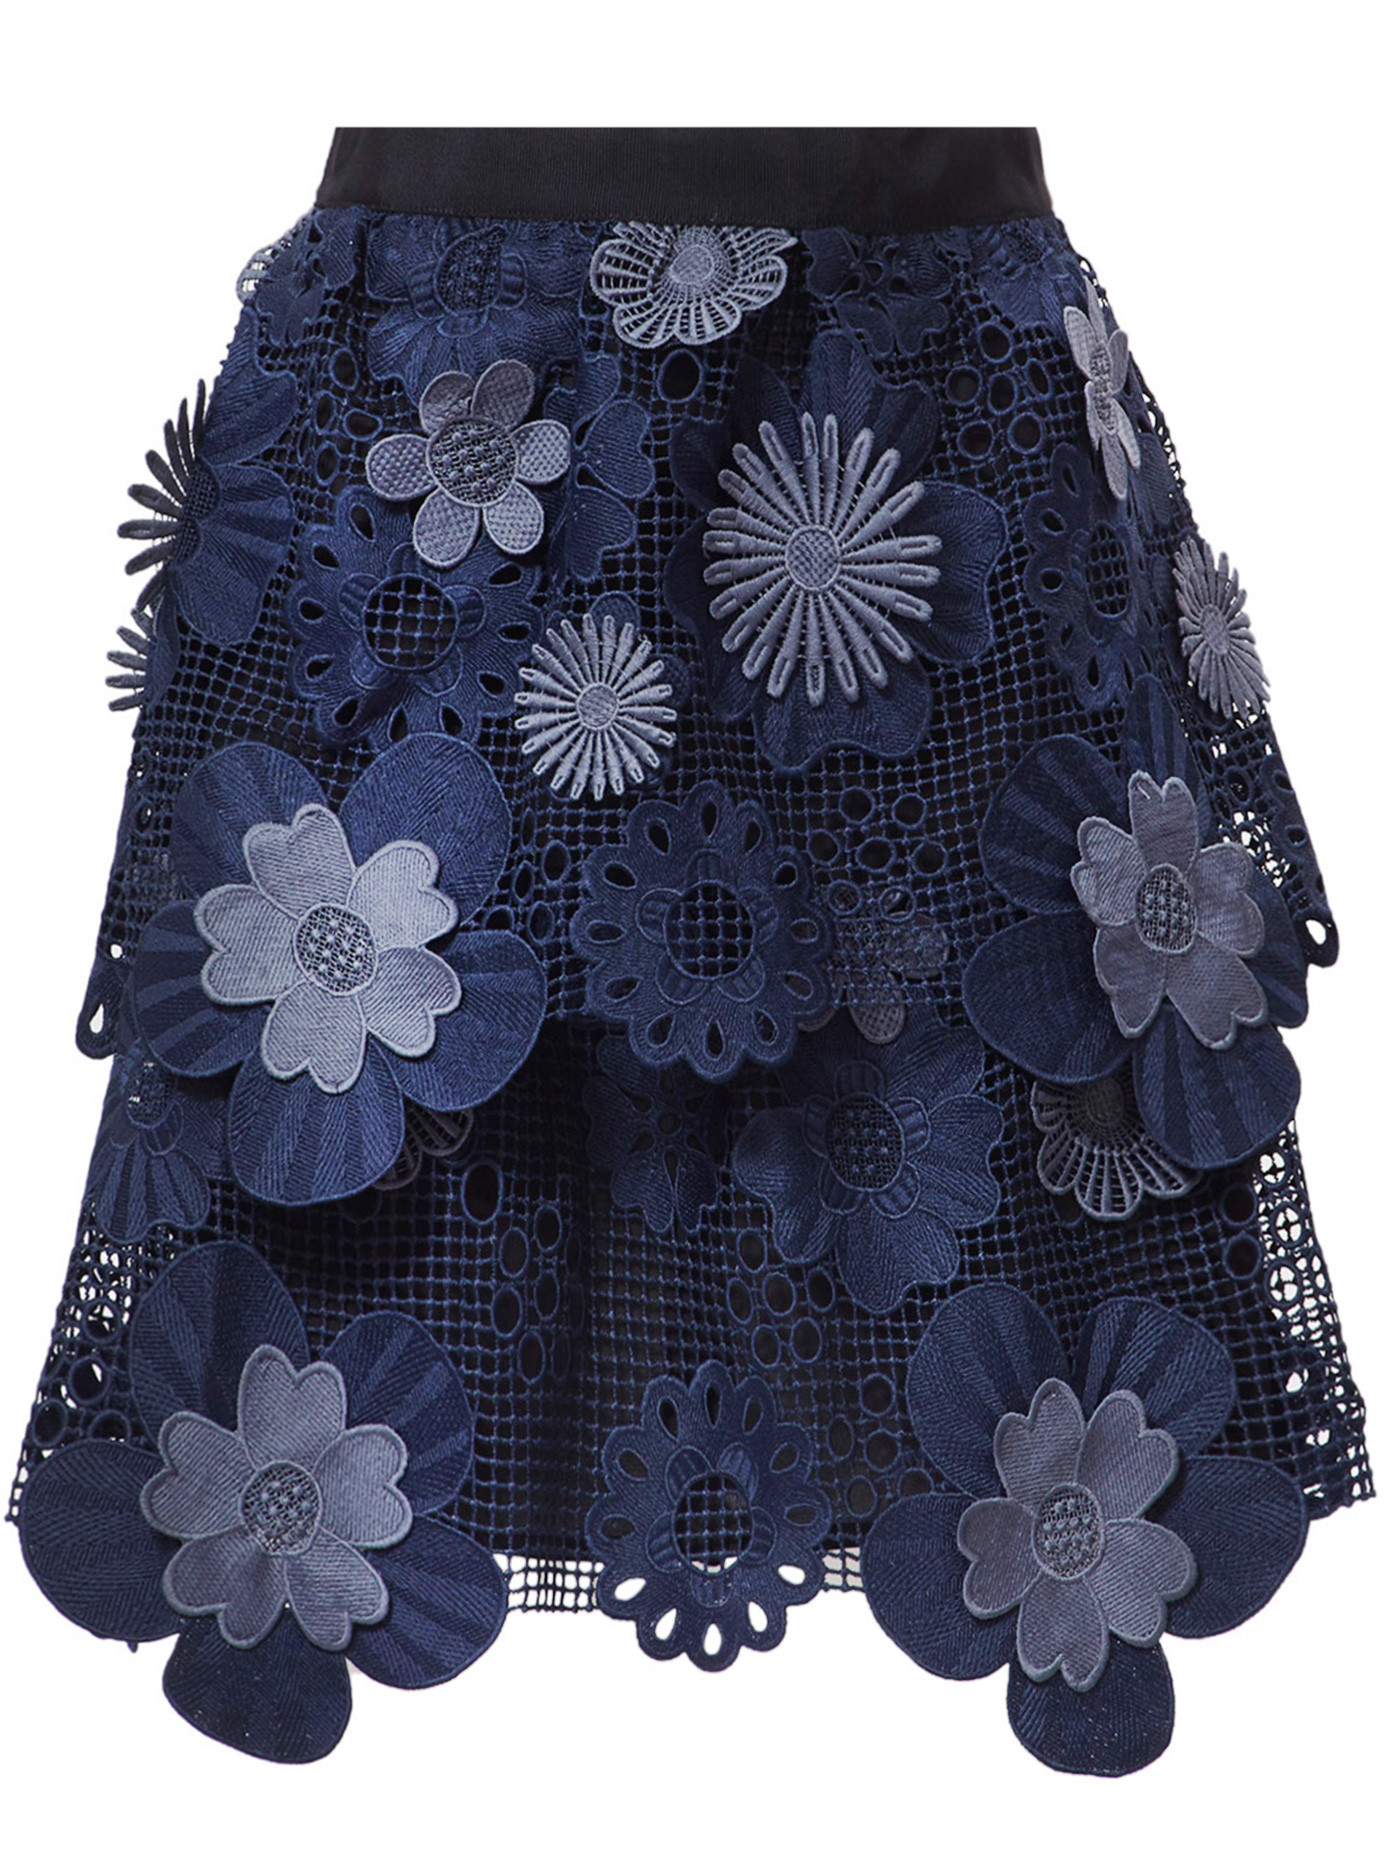 Self-Portrait Flower Adorned Mesh Skirt, £240